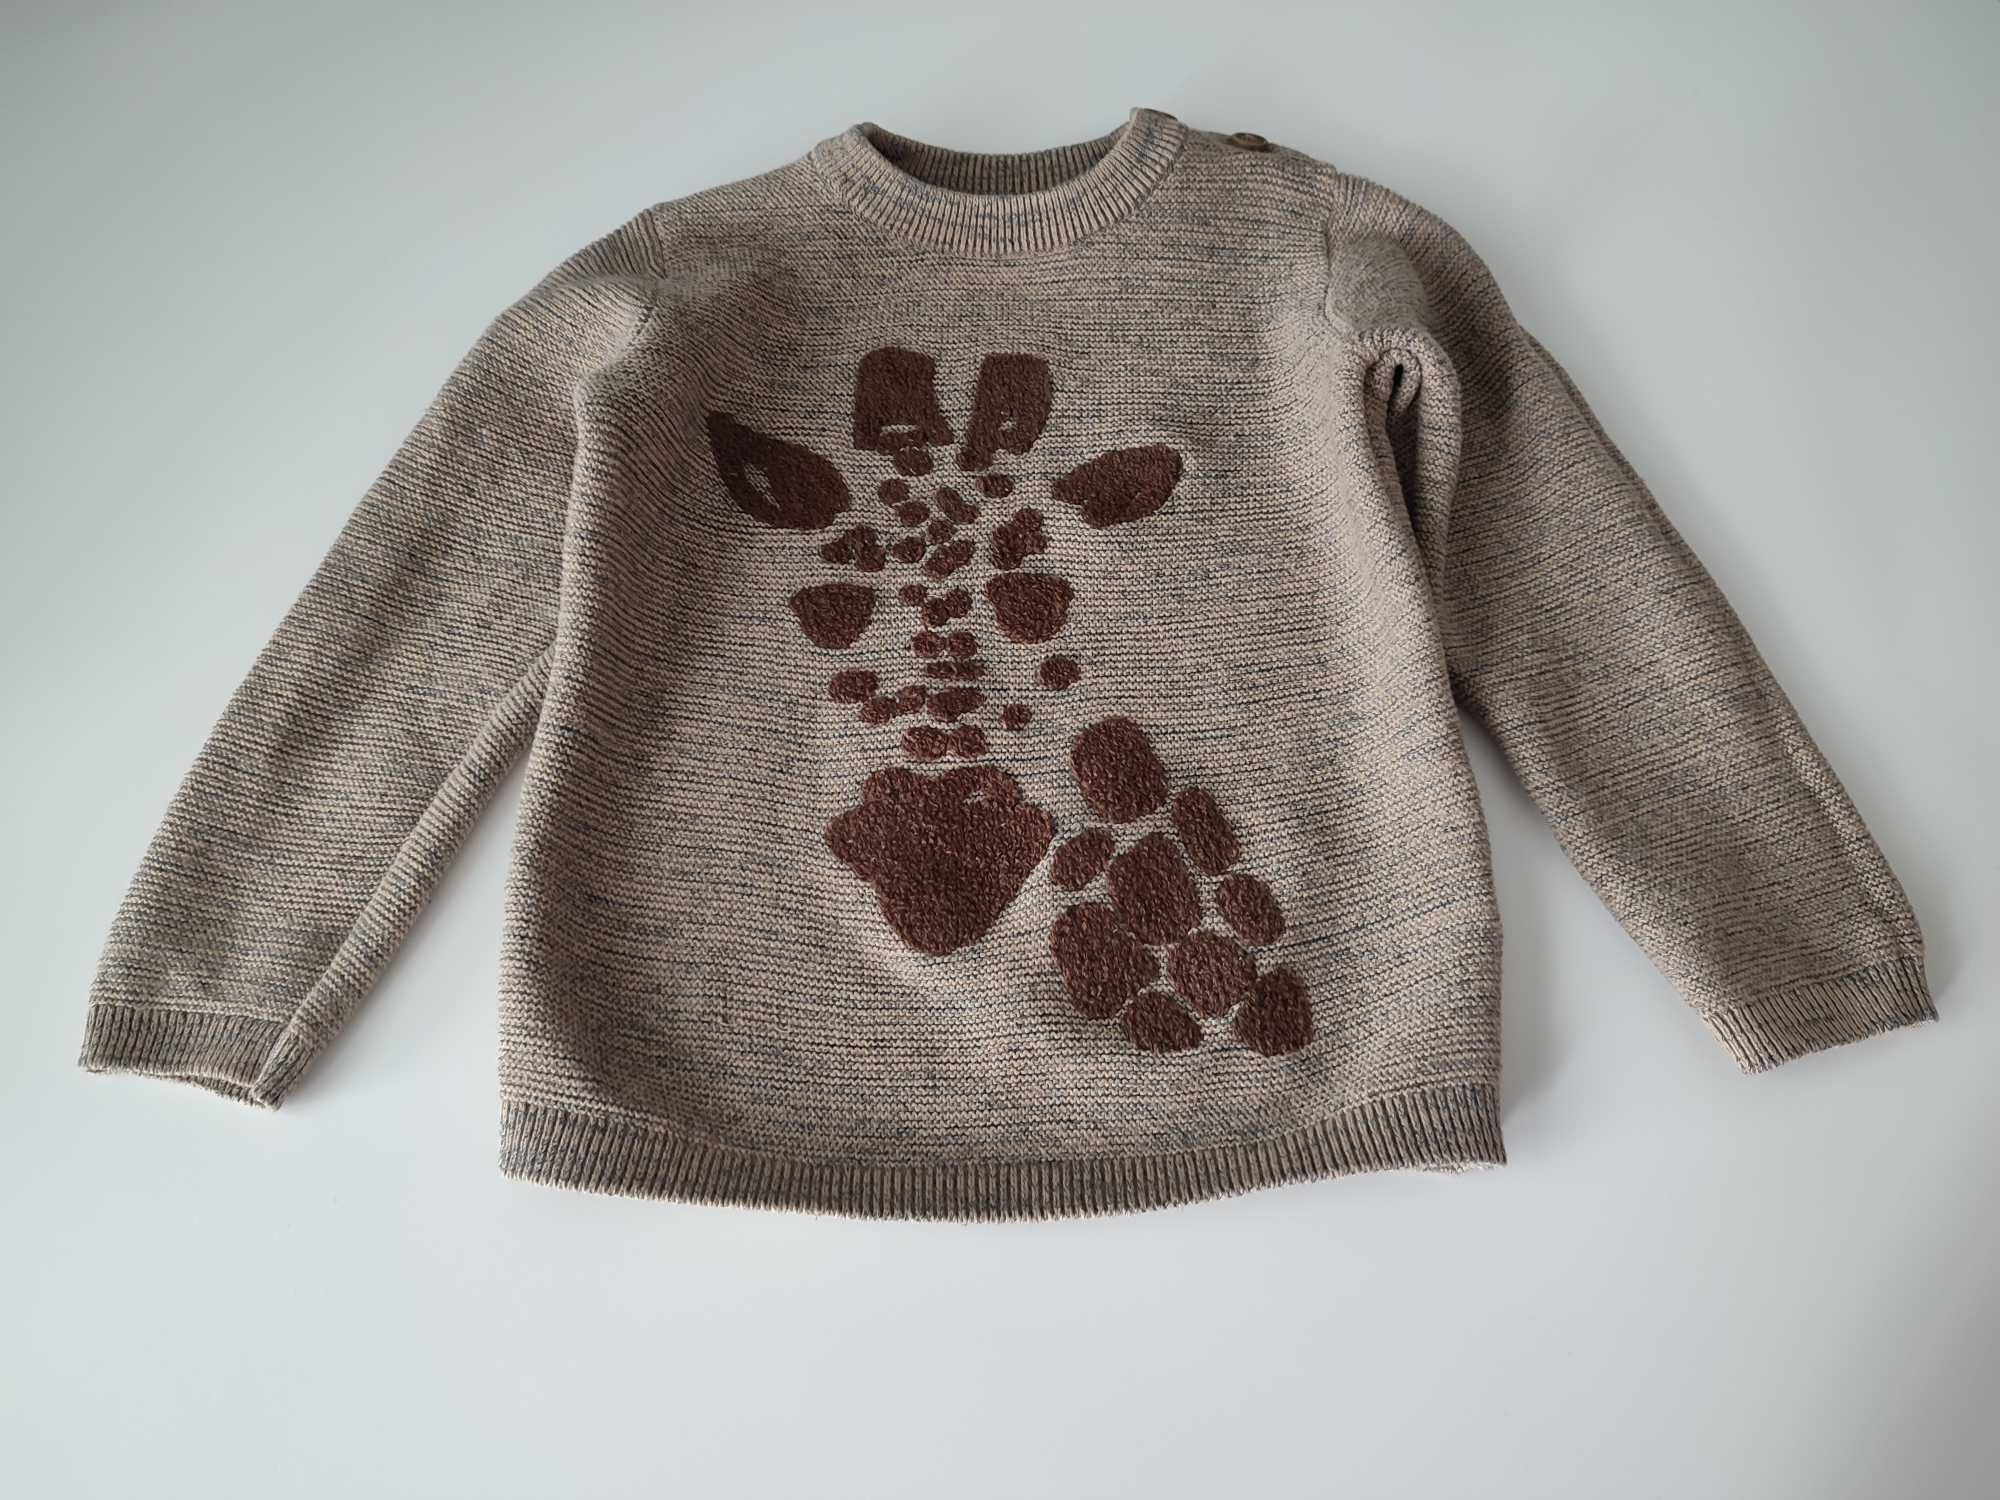 RESERVED sweter chłopięcy / dziewczęcy, brązowy, żyrafa, r. 98